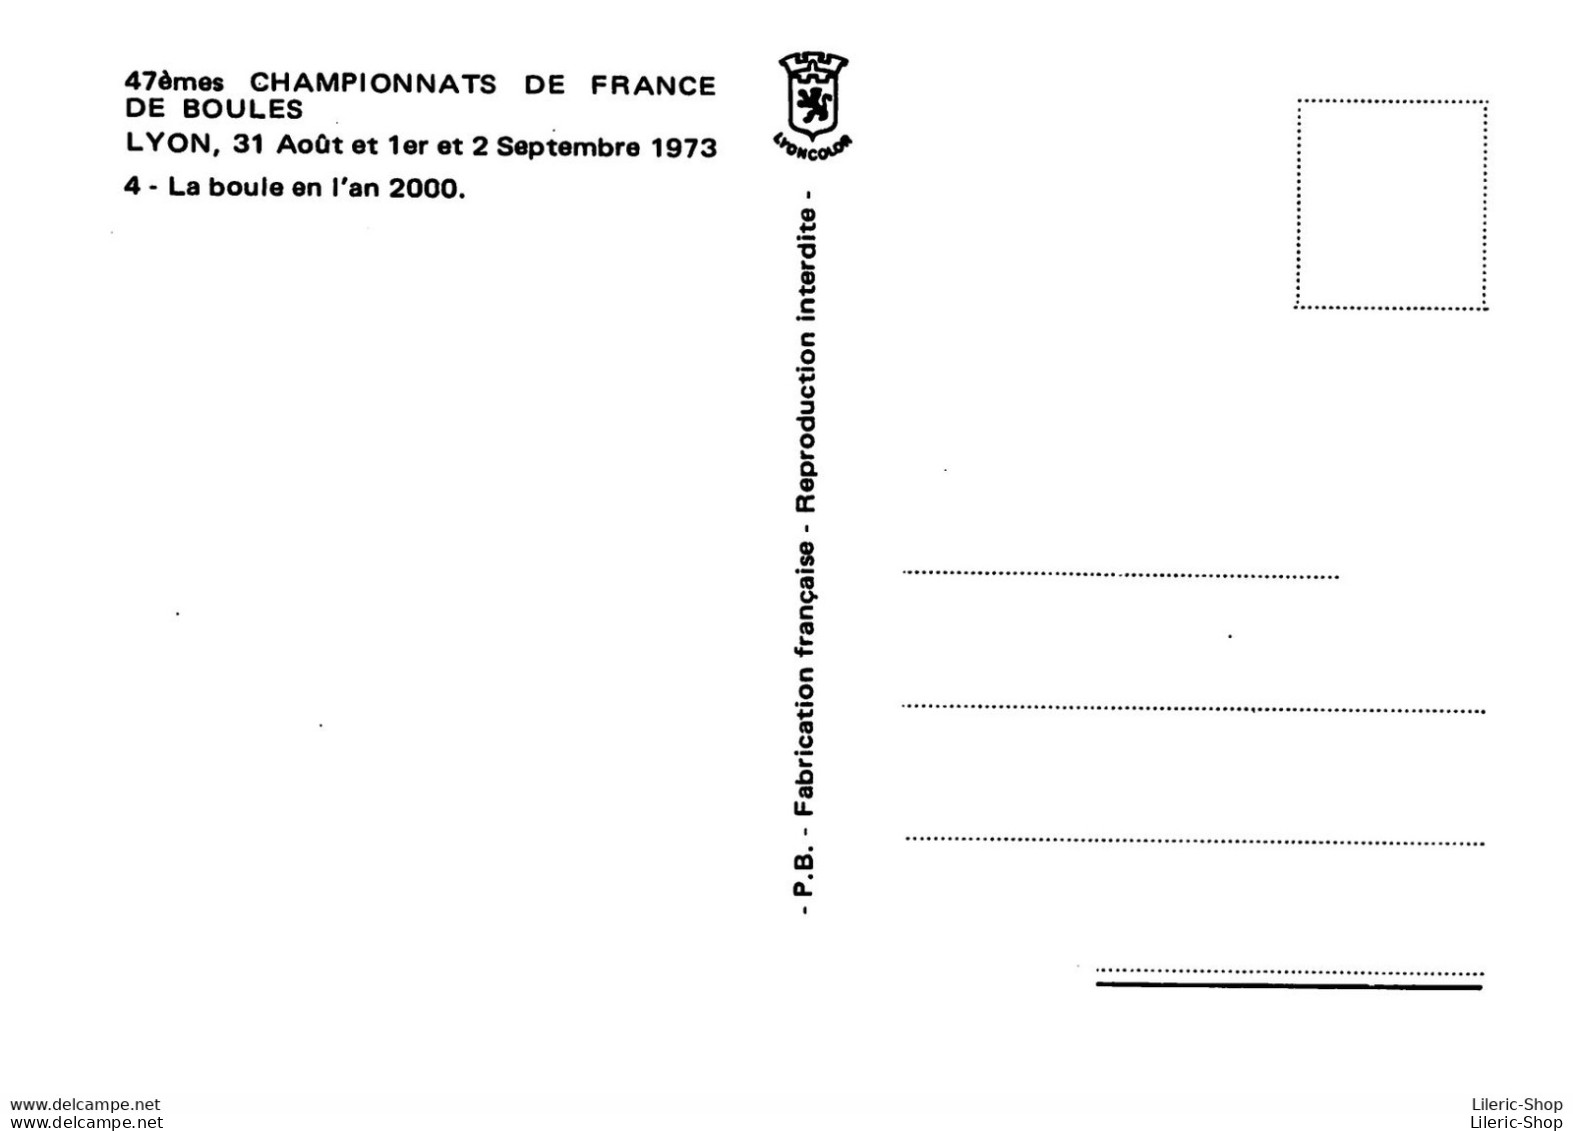 47 EMES CHAMPIONNAT DE FRANCE LYON AOUT 1973 LA BOULE DE L AN 2000 DESSIN ROGERSAM - Bocce